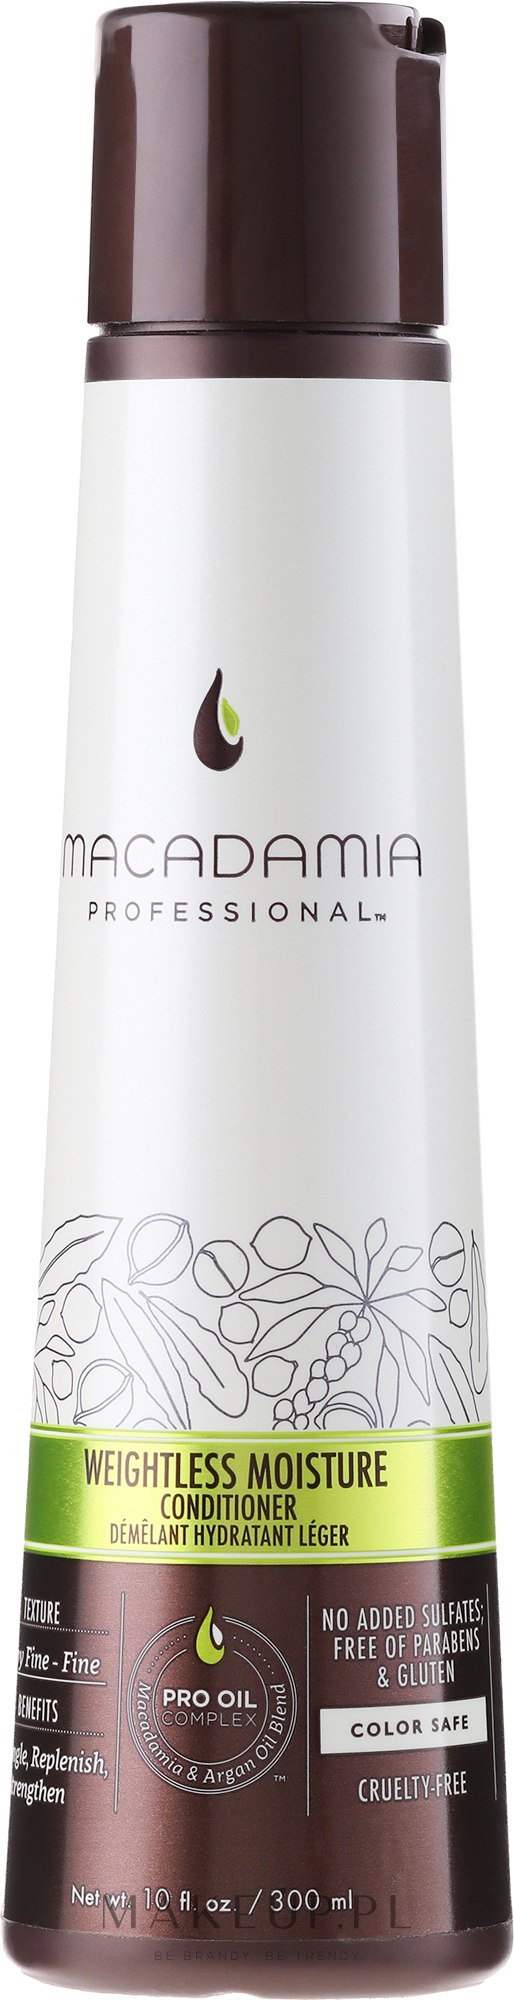 macadamia weightless moisture nawilżająca odżywka do włosów cienkich 300ml